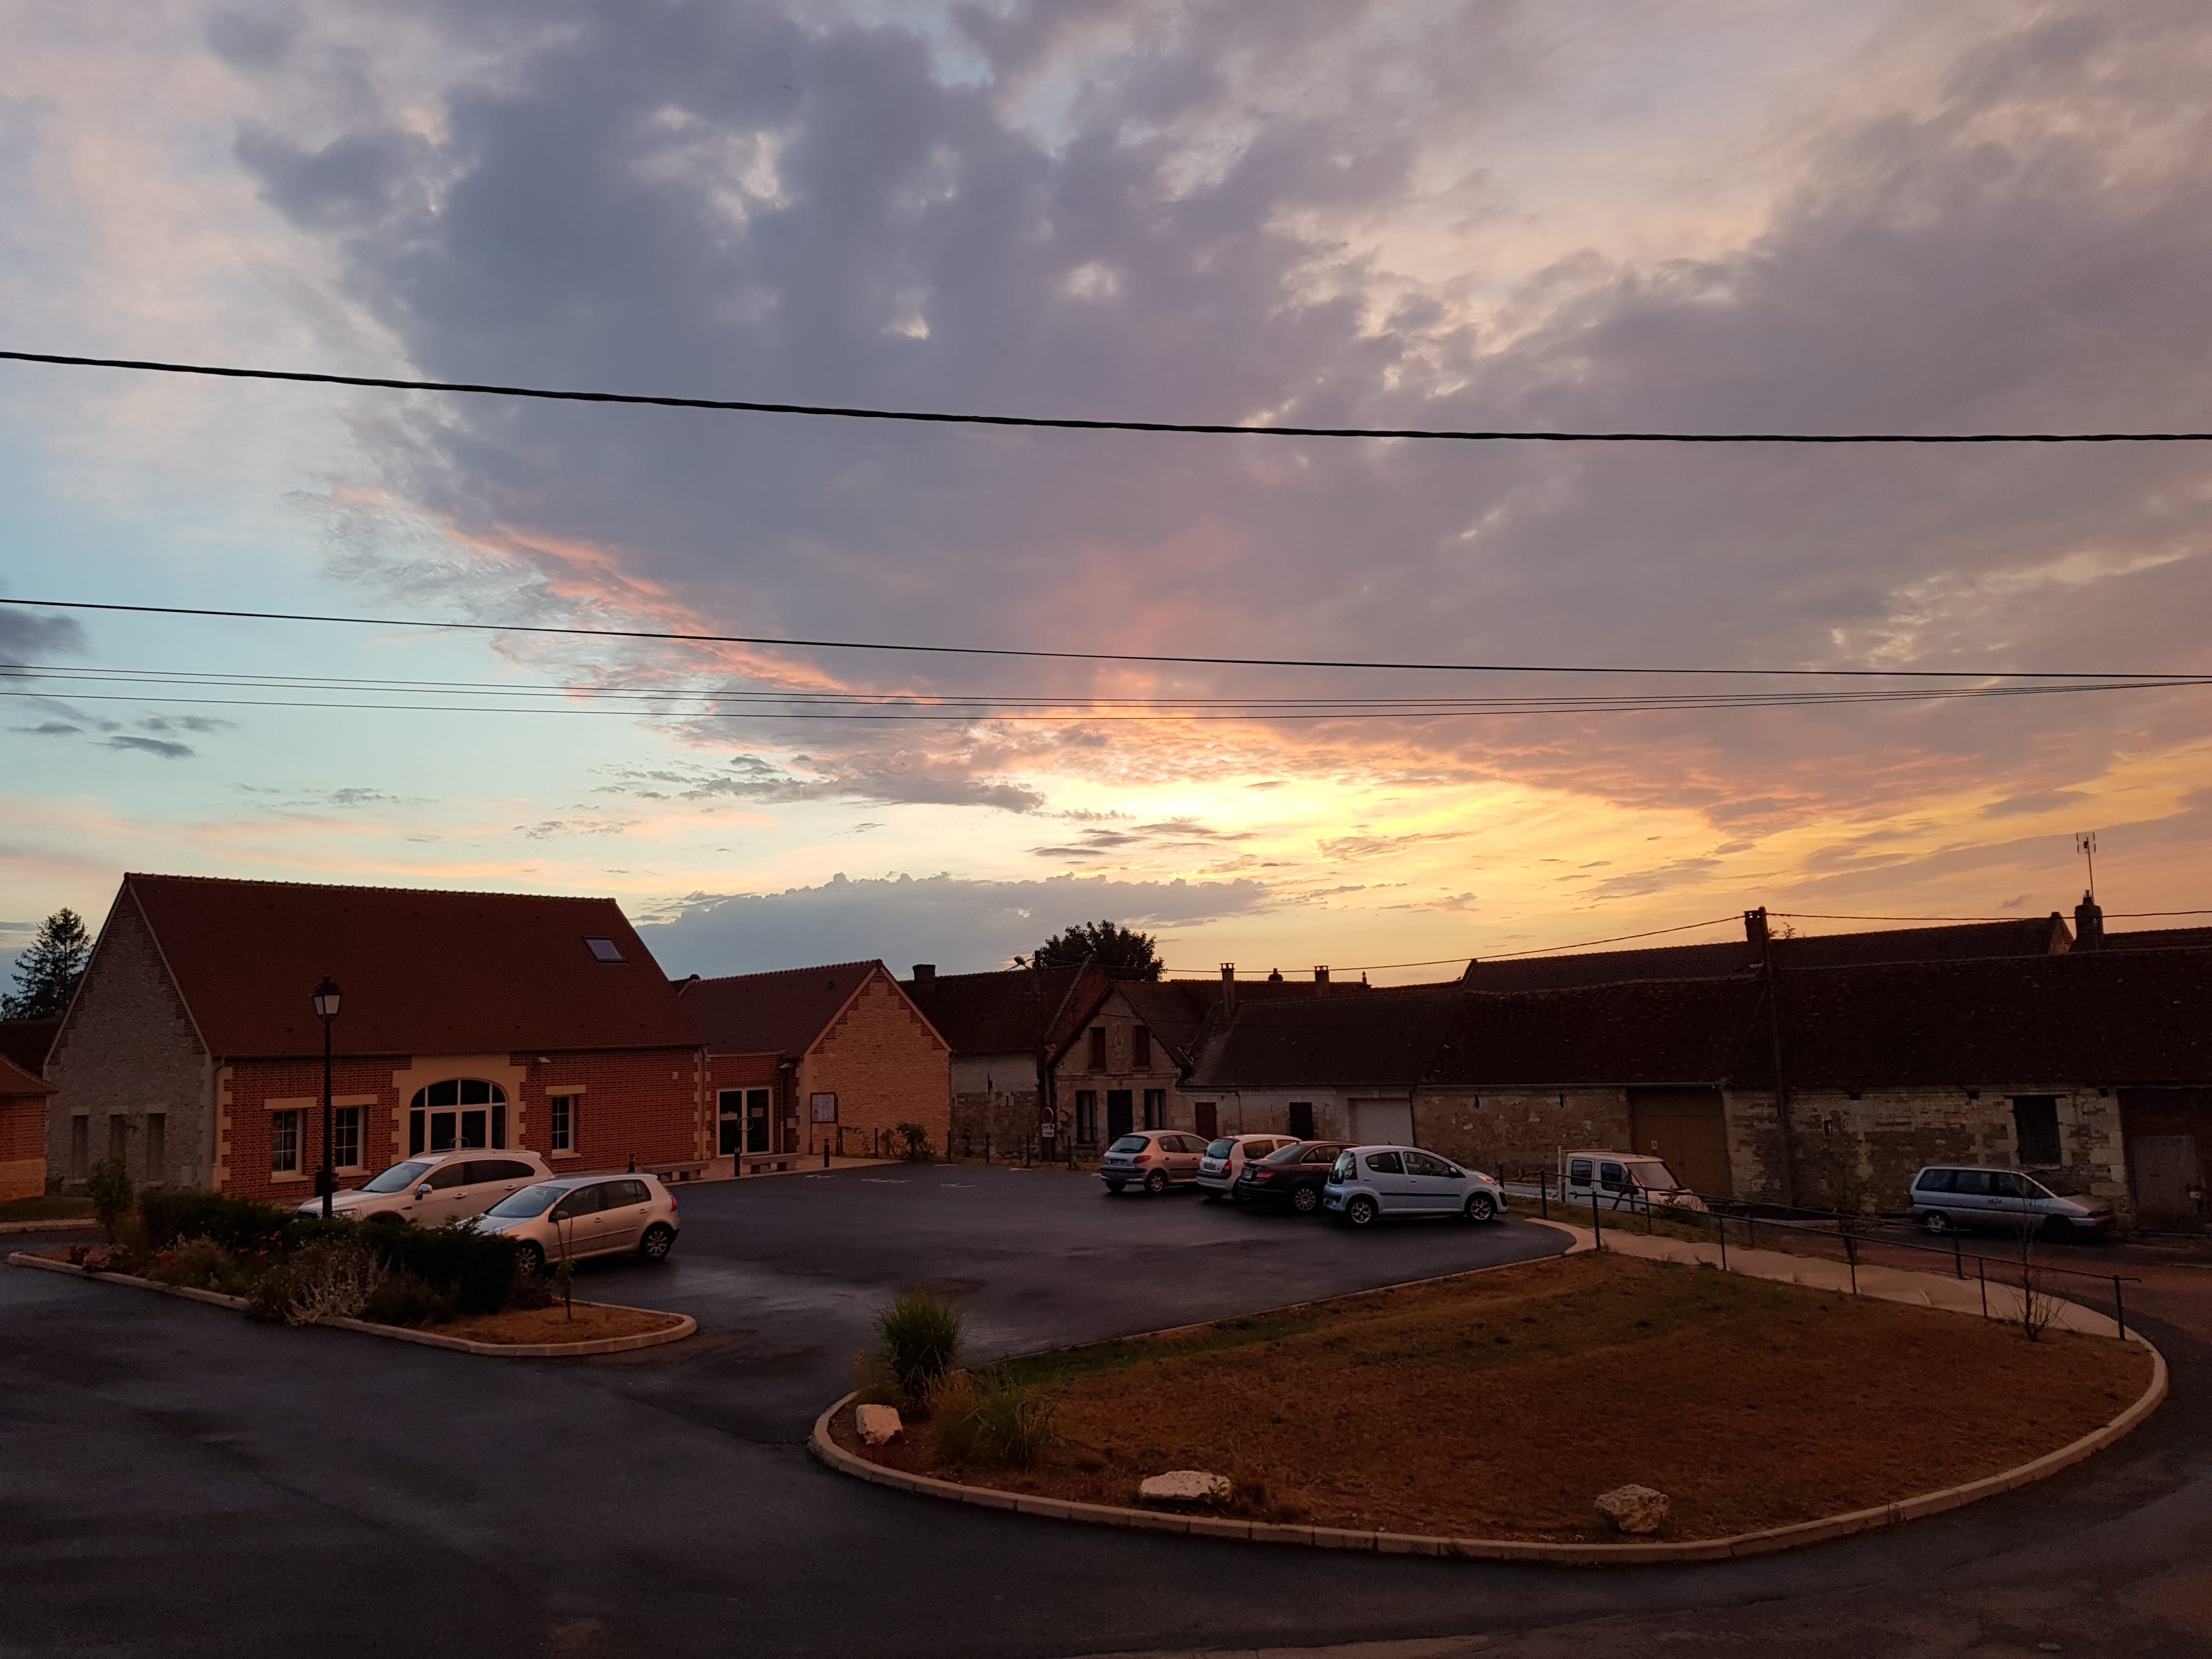 Place du village de Pronleroy 60190. étranges couleurs dans le ciel, après le gros orage de 20h17. - 26/06/2020 22:10 - JEAN-JACQUES LEPERT